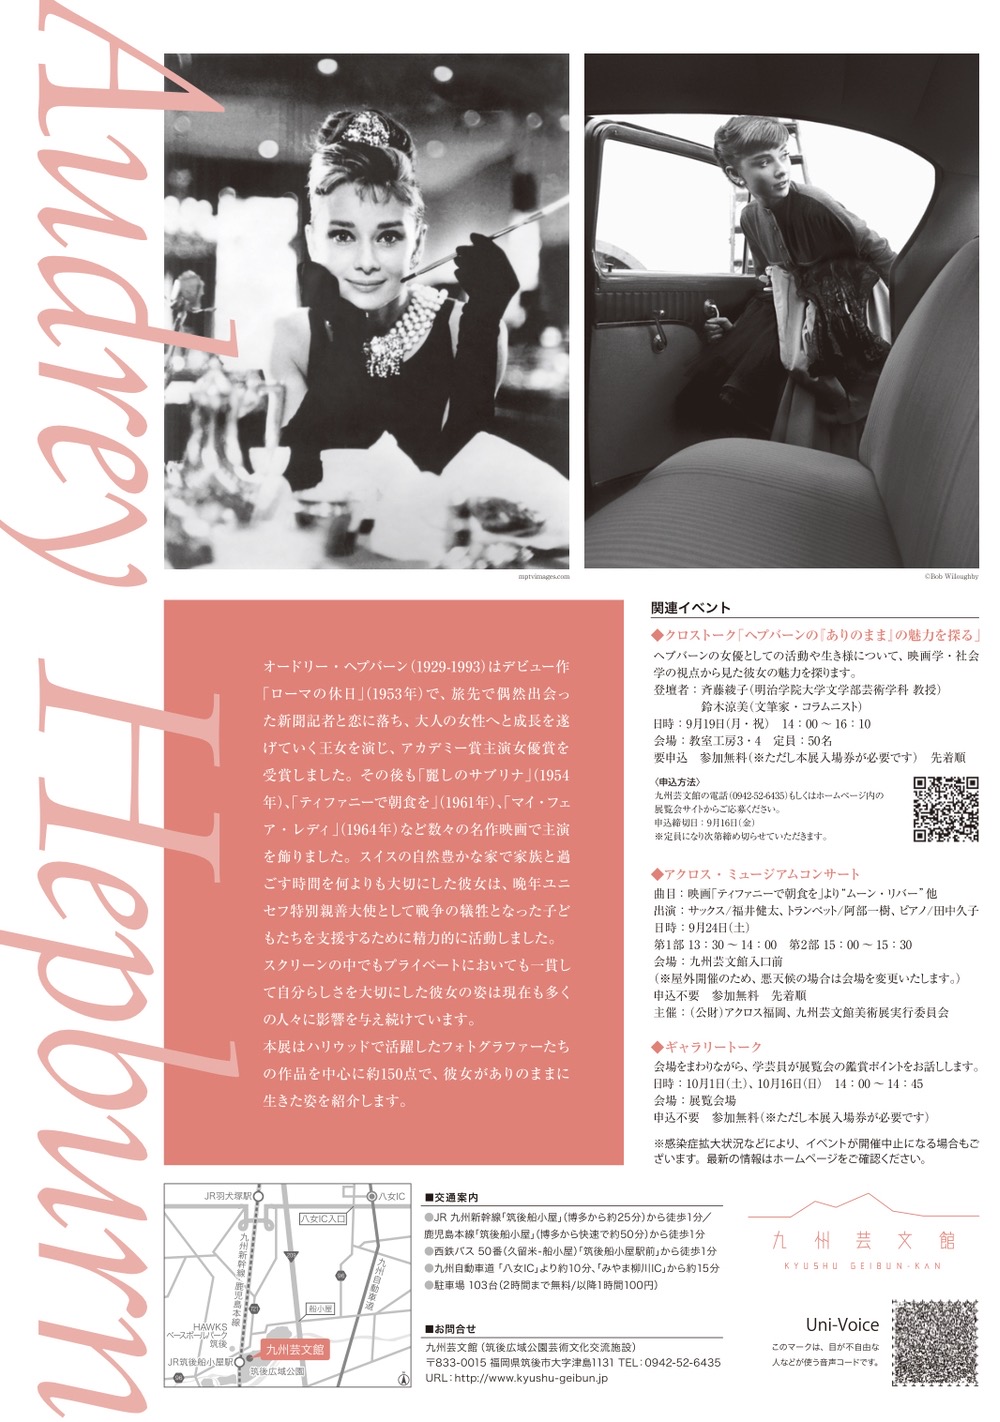 写真展「オードリー・ヘプバーン」ありのままを生きる 九州芸文館で開催【筑後市】